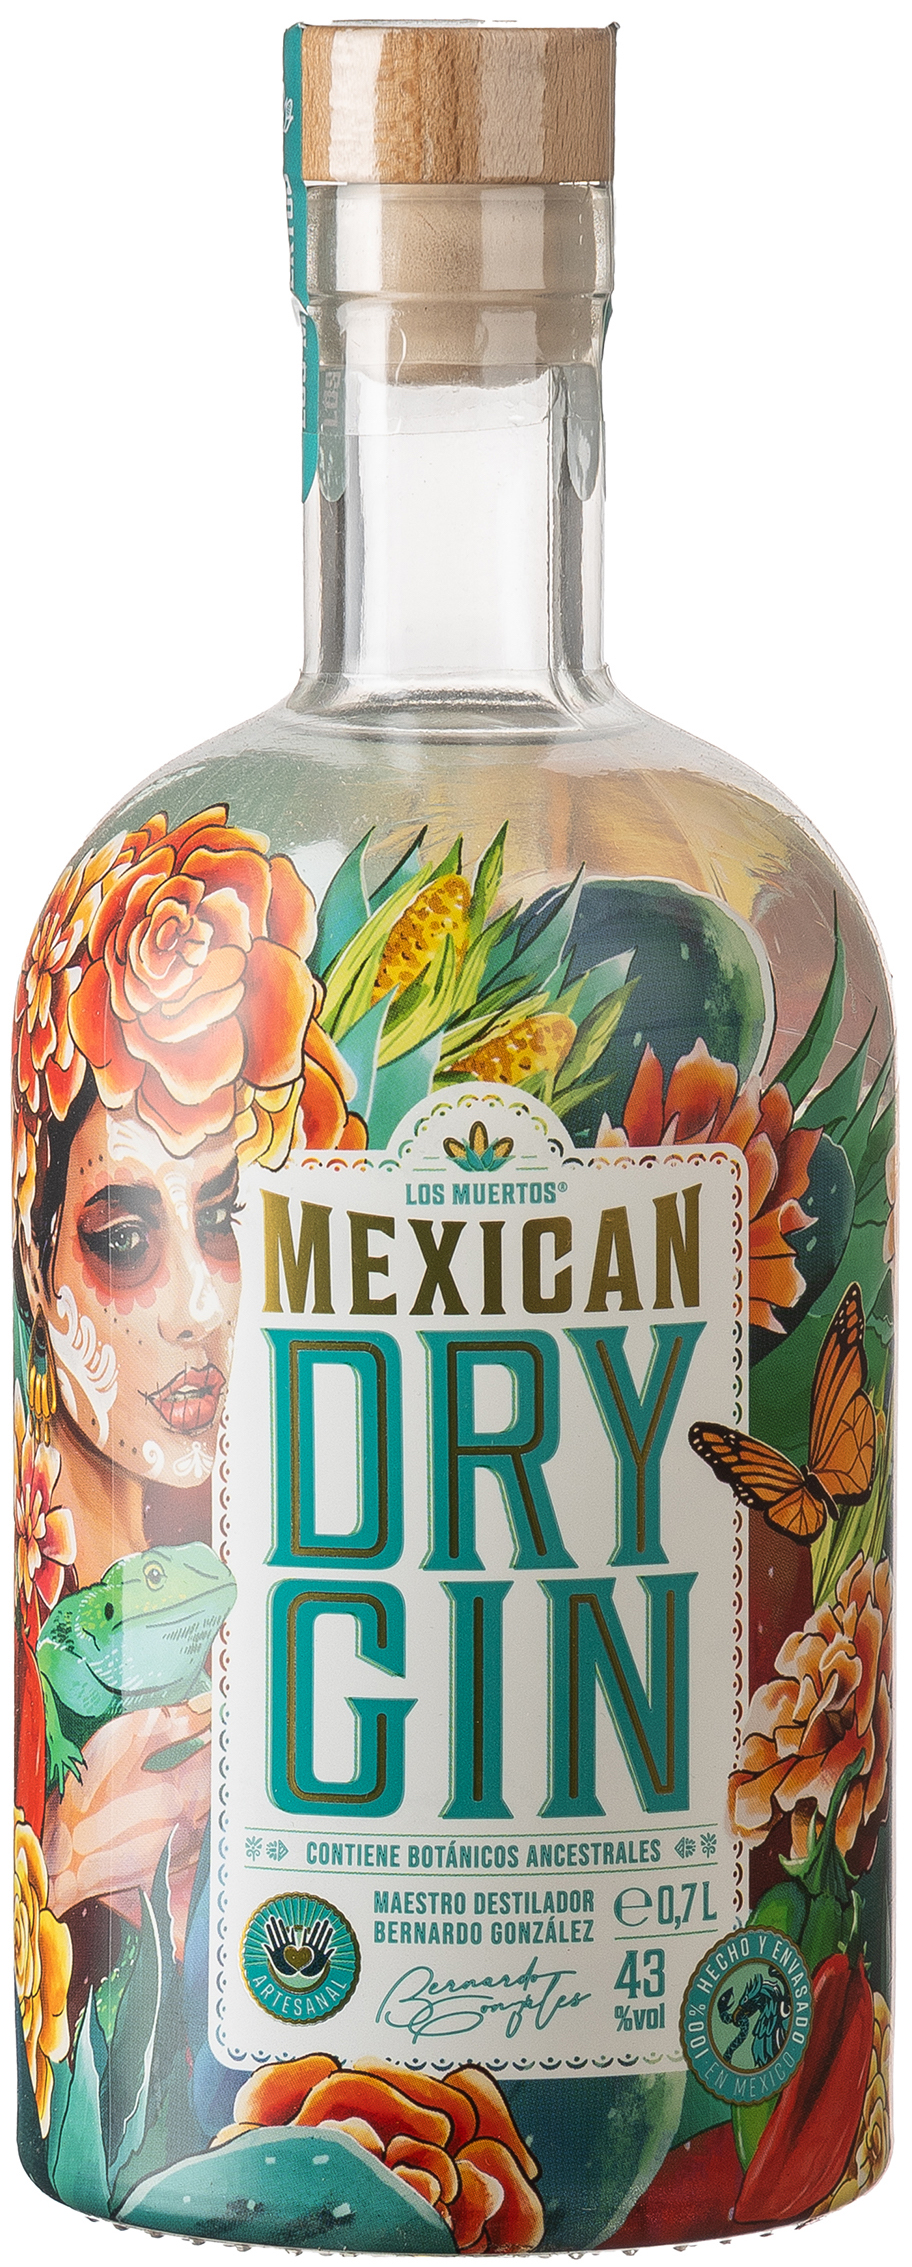 Los Muertos Mexican Dry Gin 43% vol. 0,7L